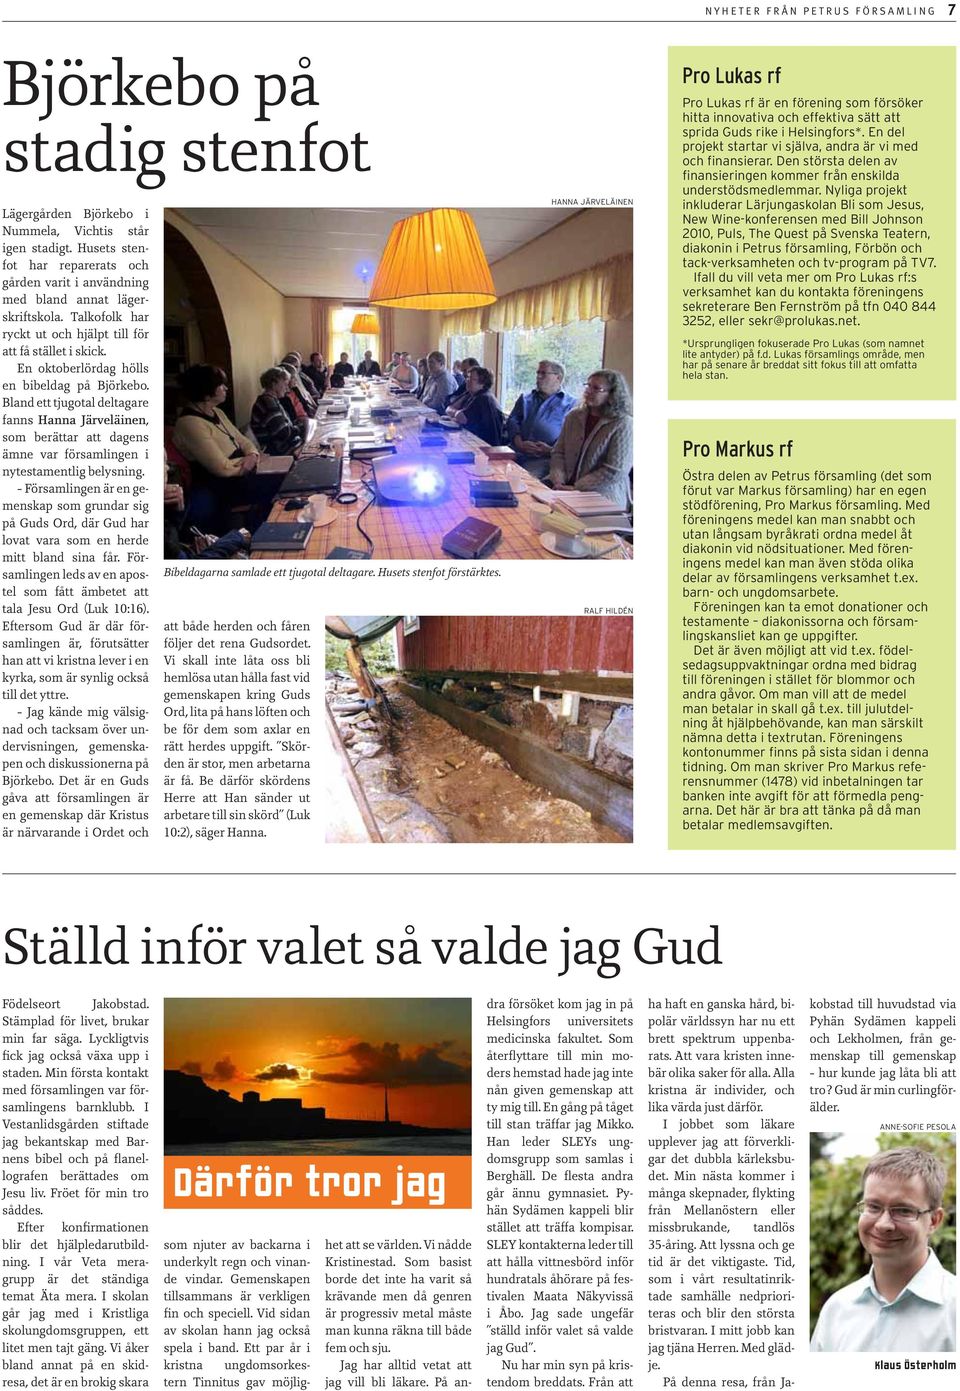 En oktoberlördag hölls en bibeldag på Björkebo. Bland ett tjugotal deltagare fanns Hanna Järveläinen, som berättar att dagens ämne var församlingen i nytestamentlig belysning.